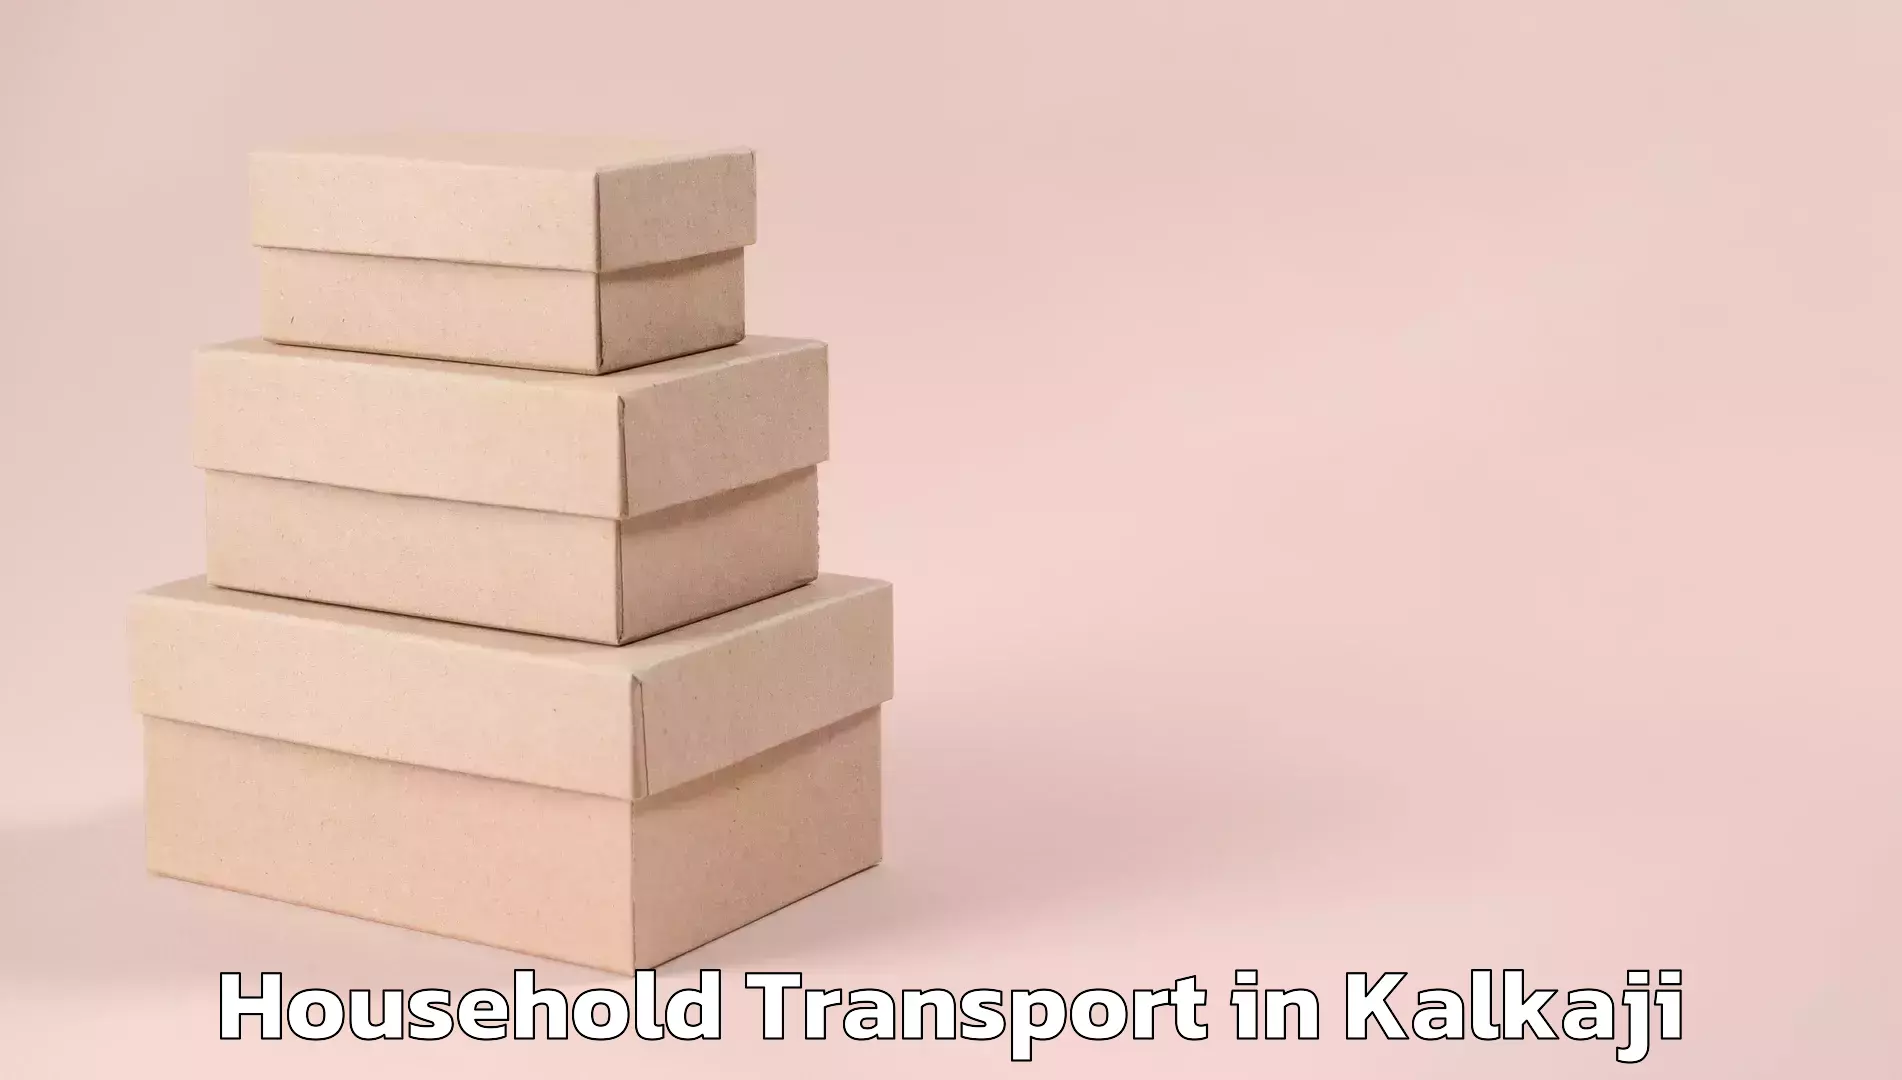 Skilled furniture transporters in Kalkaji